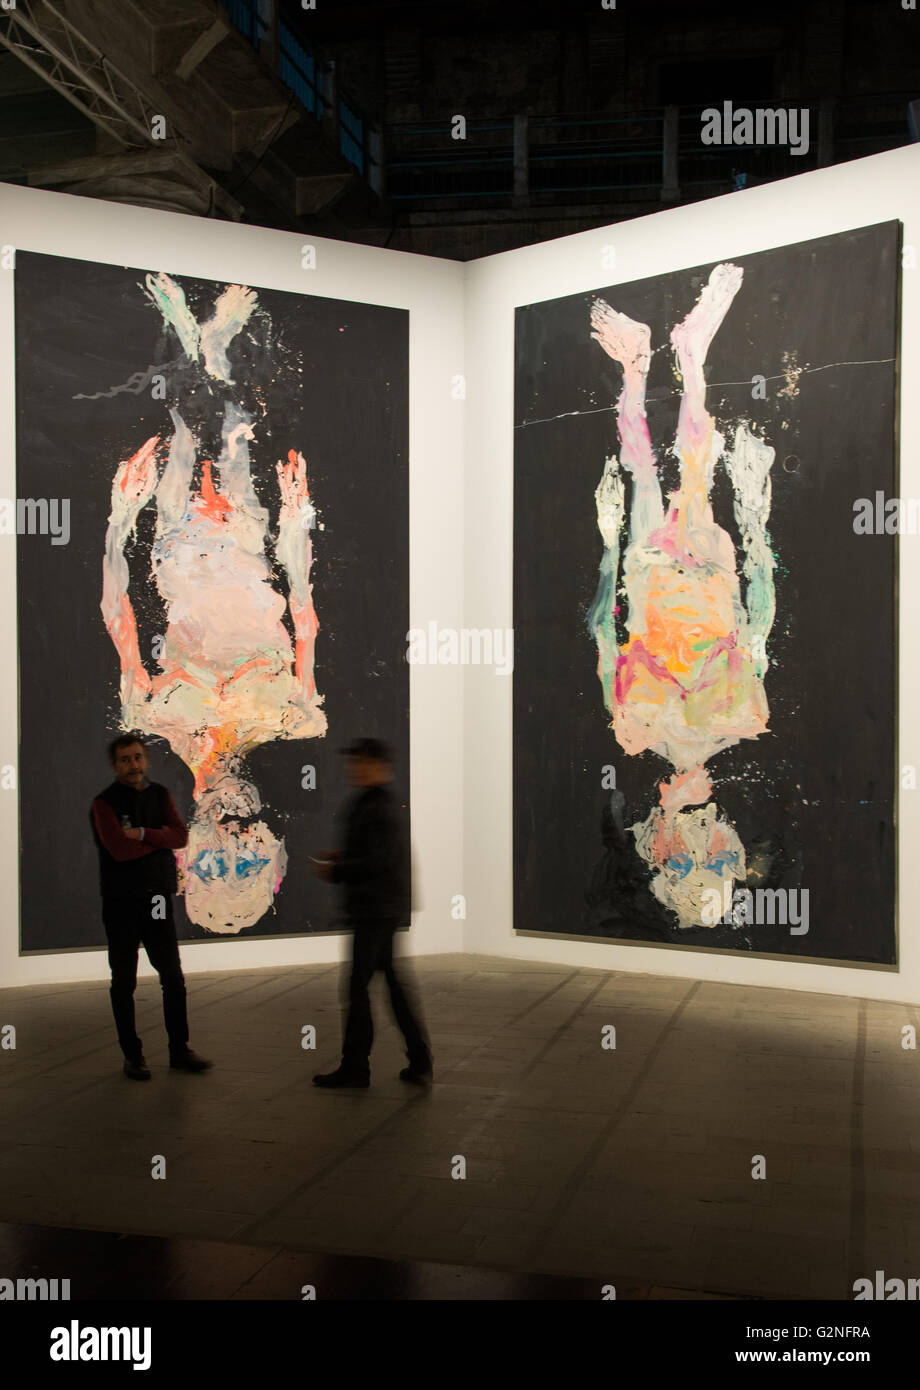 Venezia, Italia - circa novembre 2015 - due di Georg Baseltiz's artwrks alla Biennale di Venezia 2015 Foto Stock